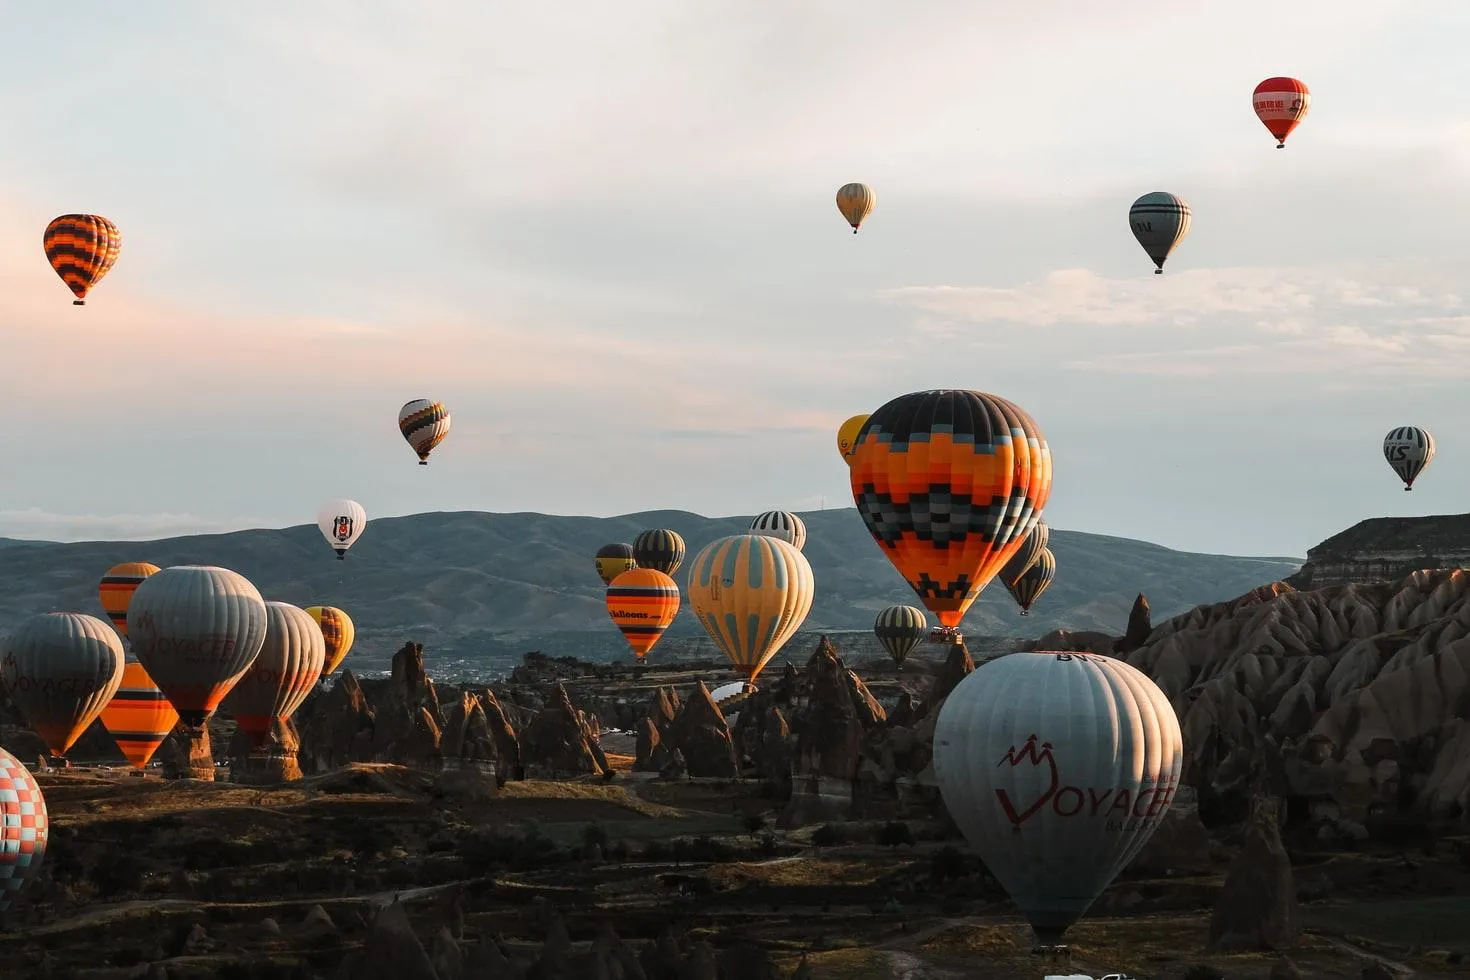 Турция первой в мире будет развивать устойчивый туризм